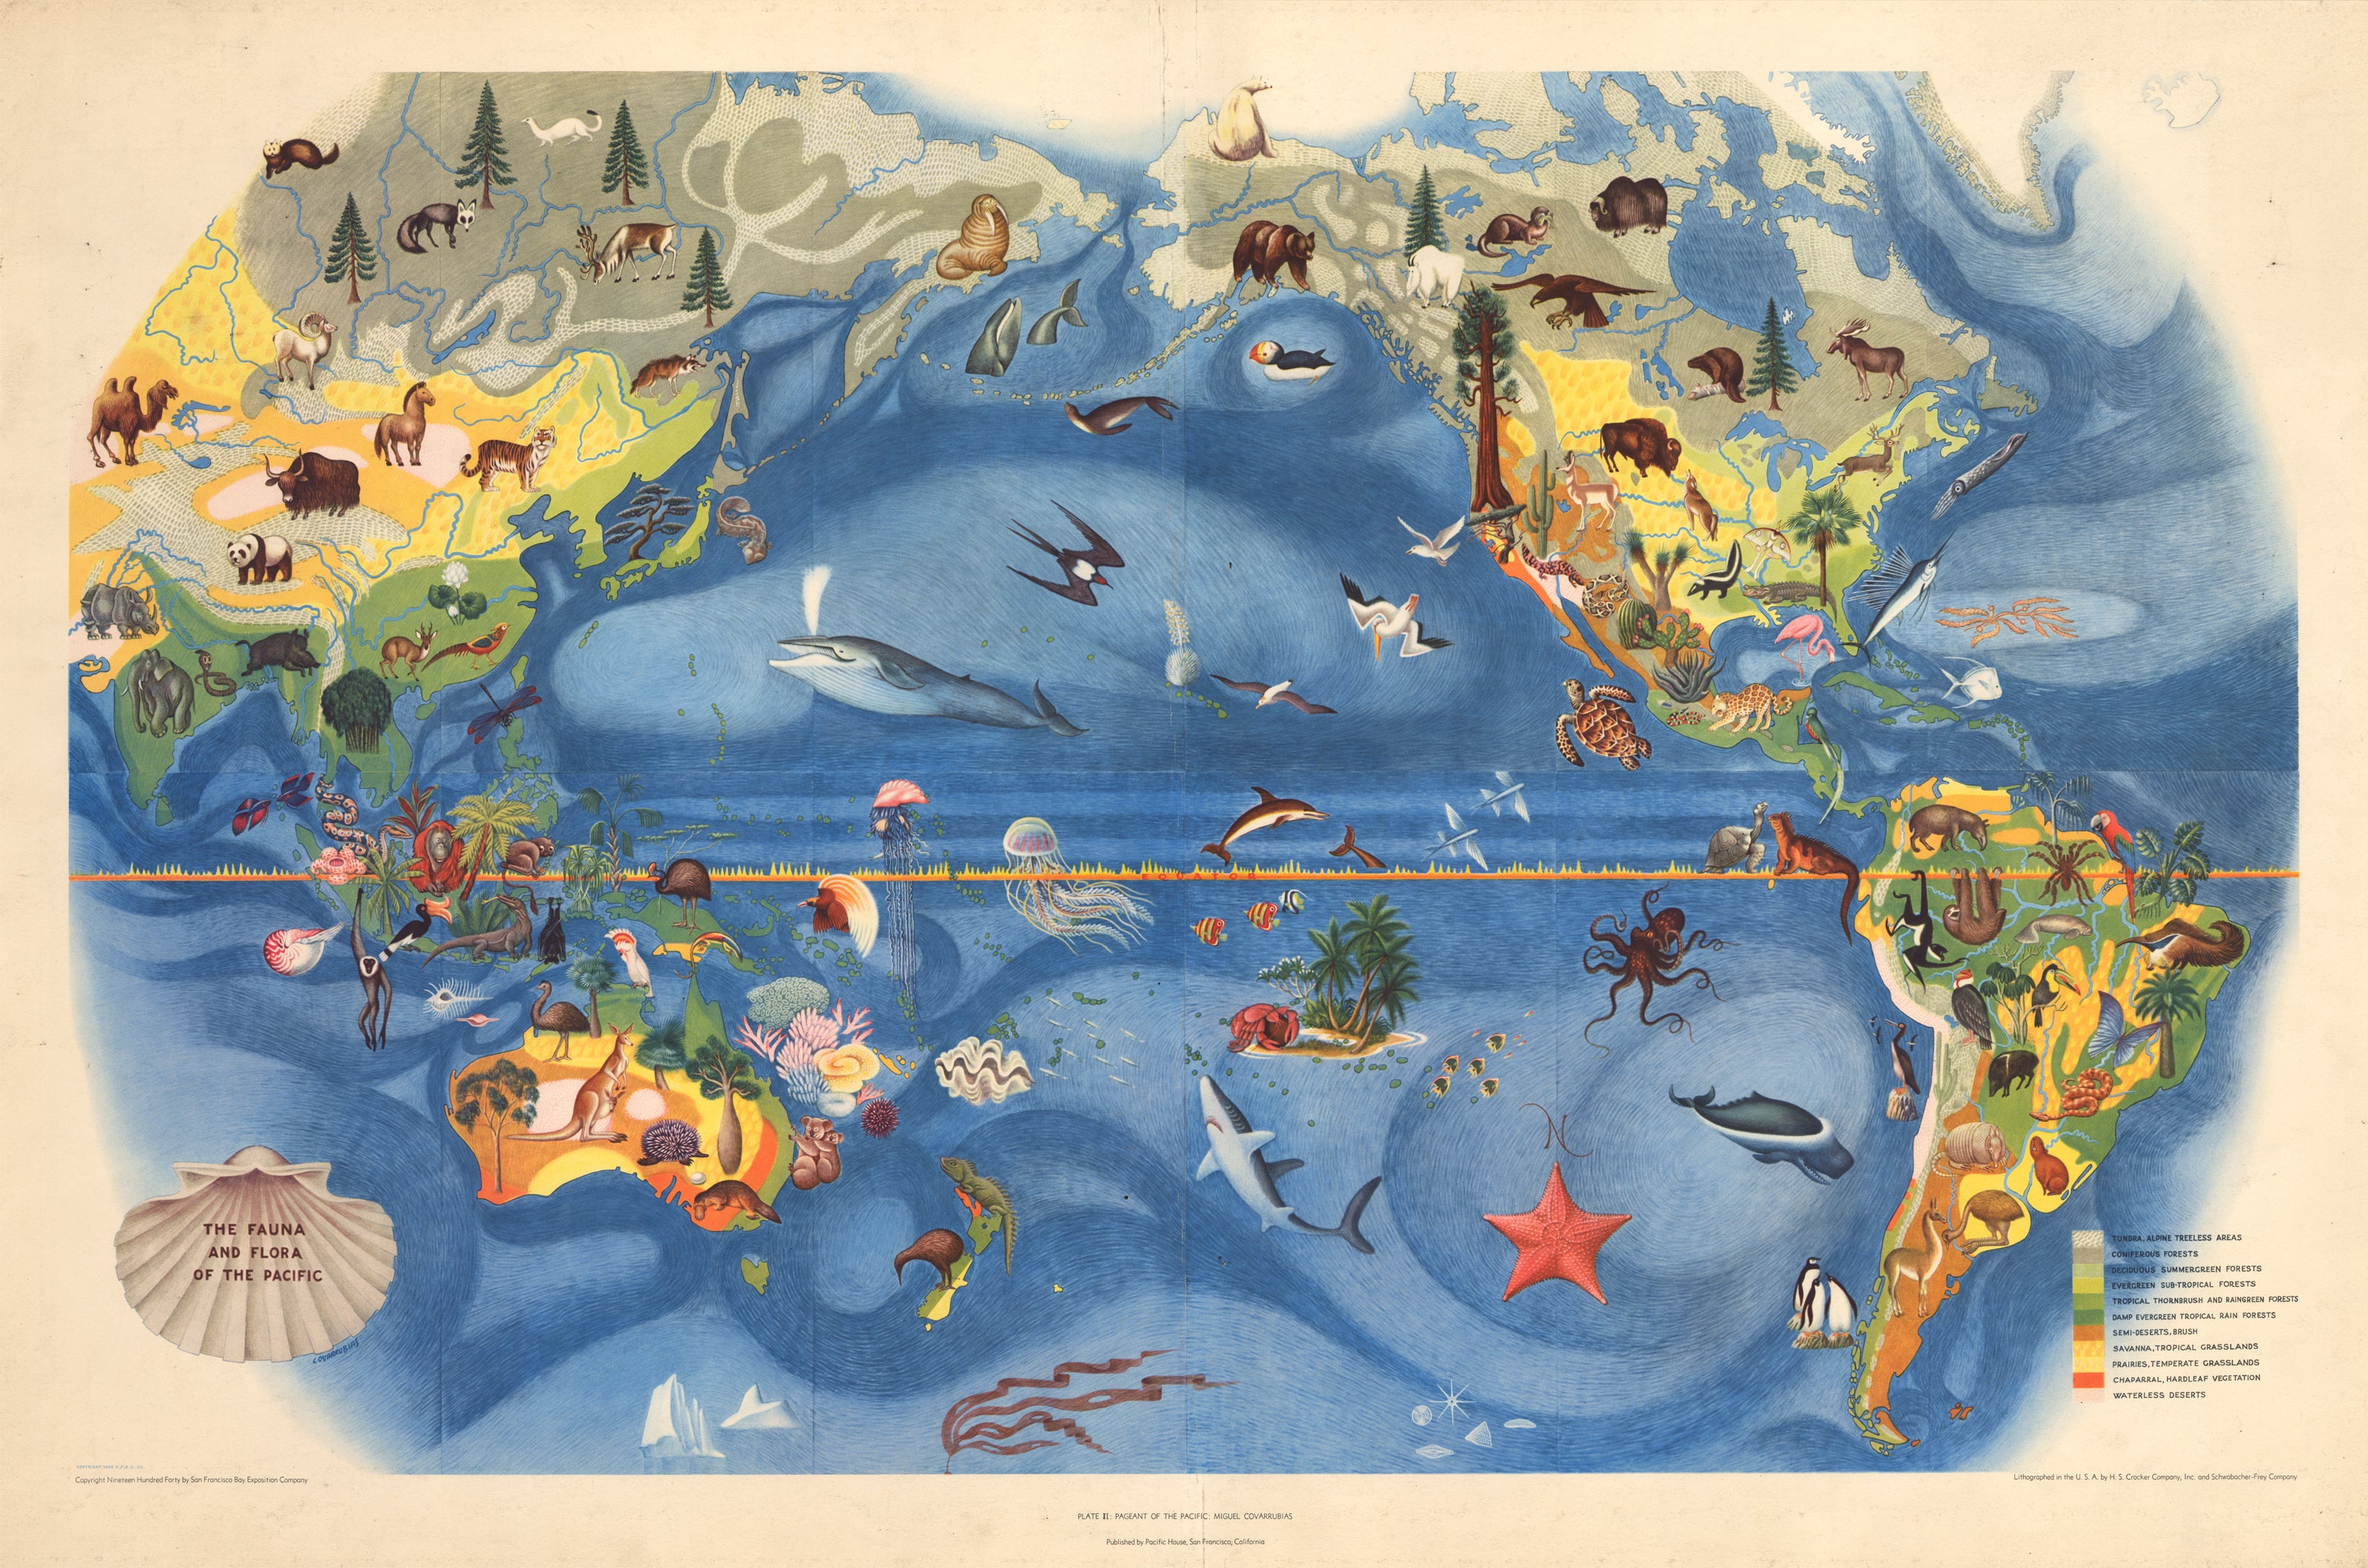 карта островов тихого океана